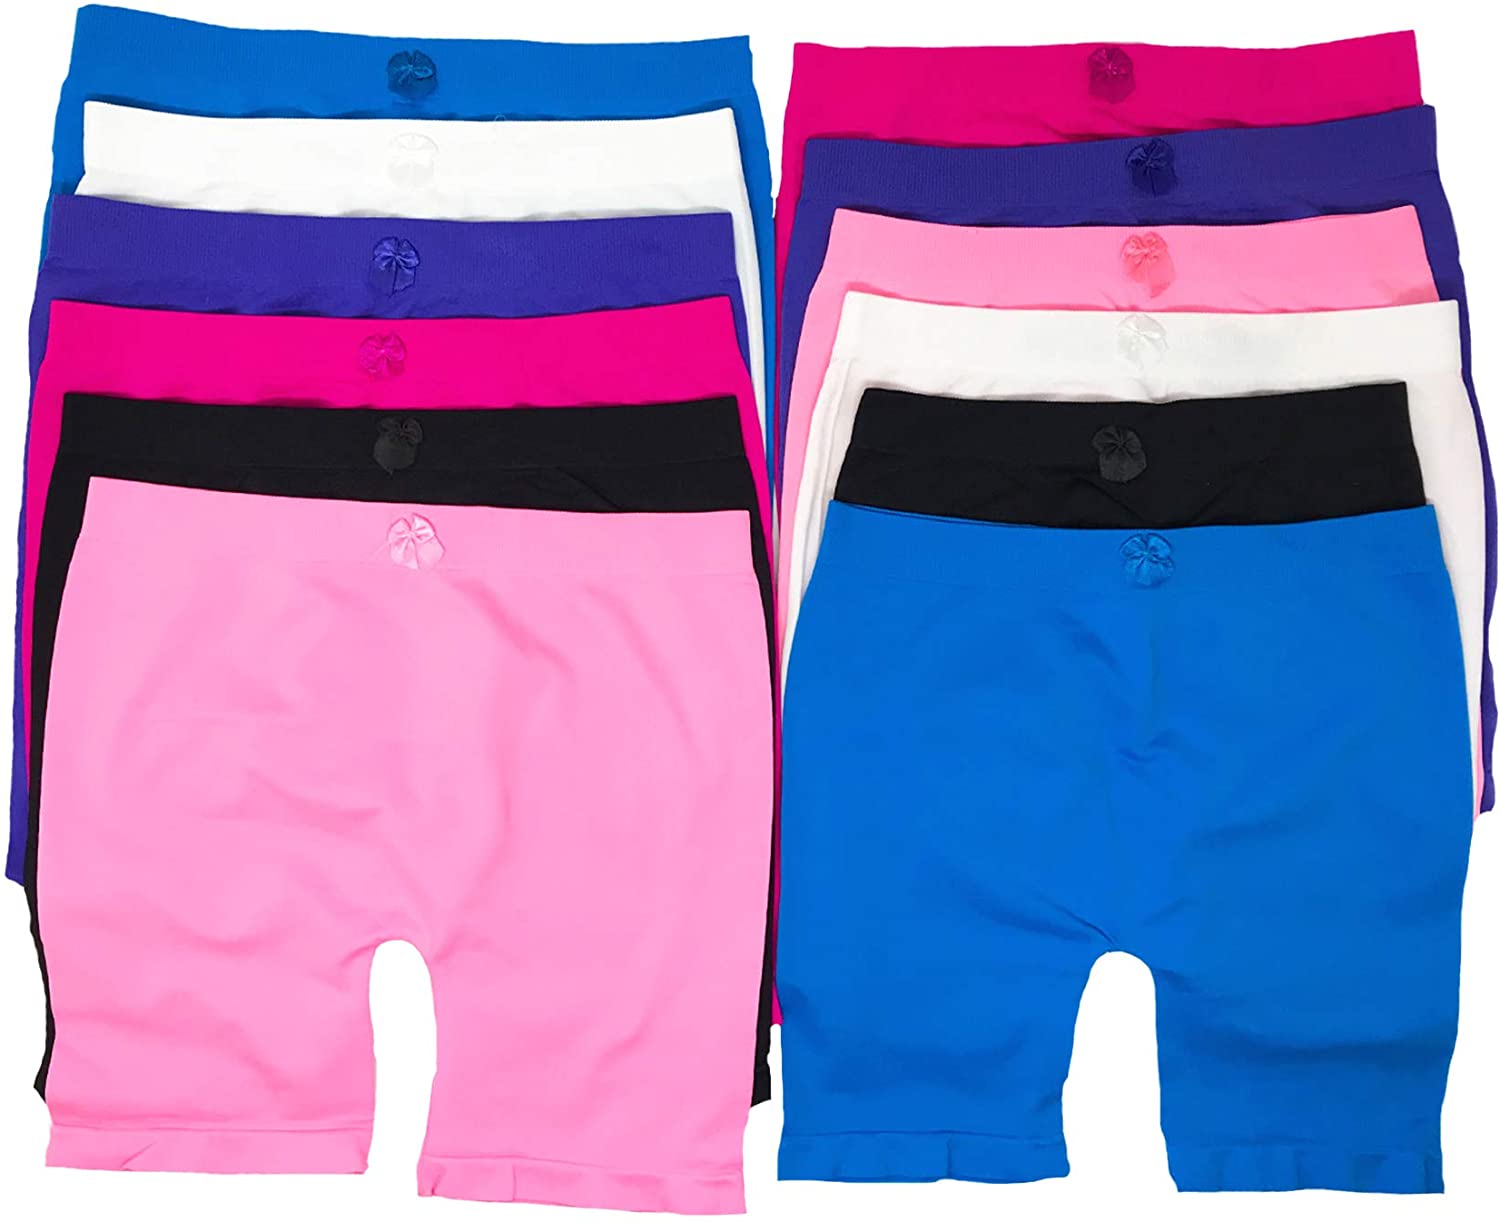  6 Pack Dance Shorts Under Dress Girls Bike Short for